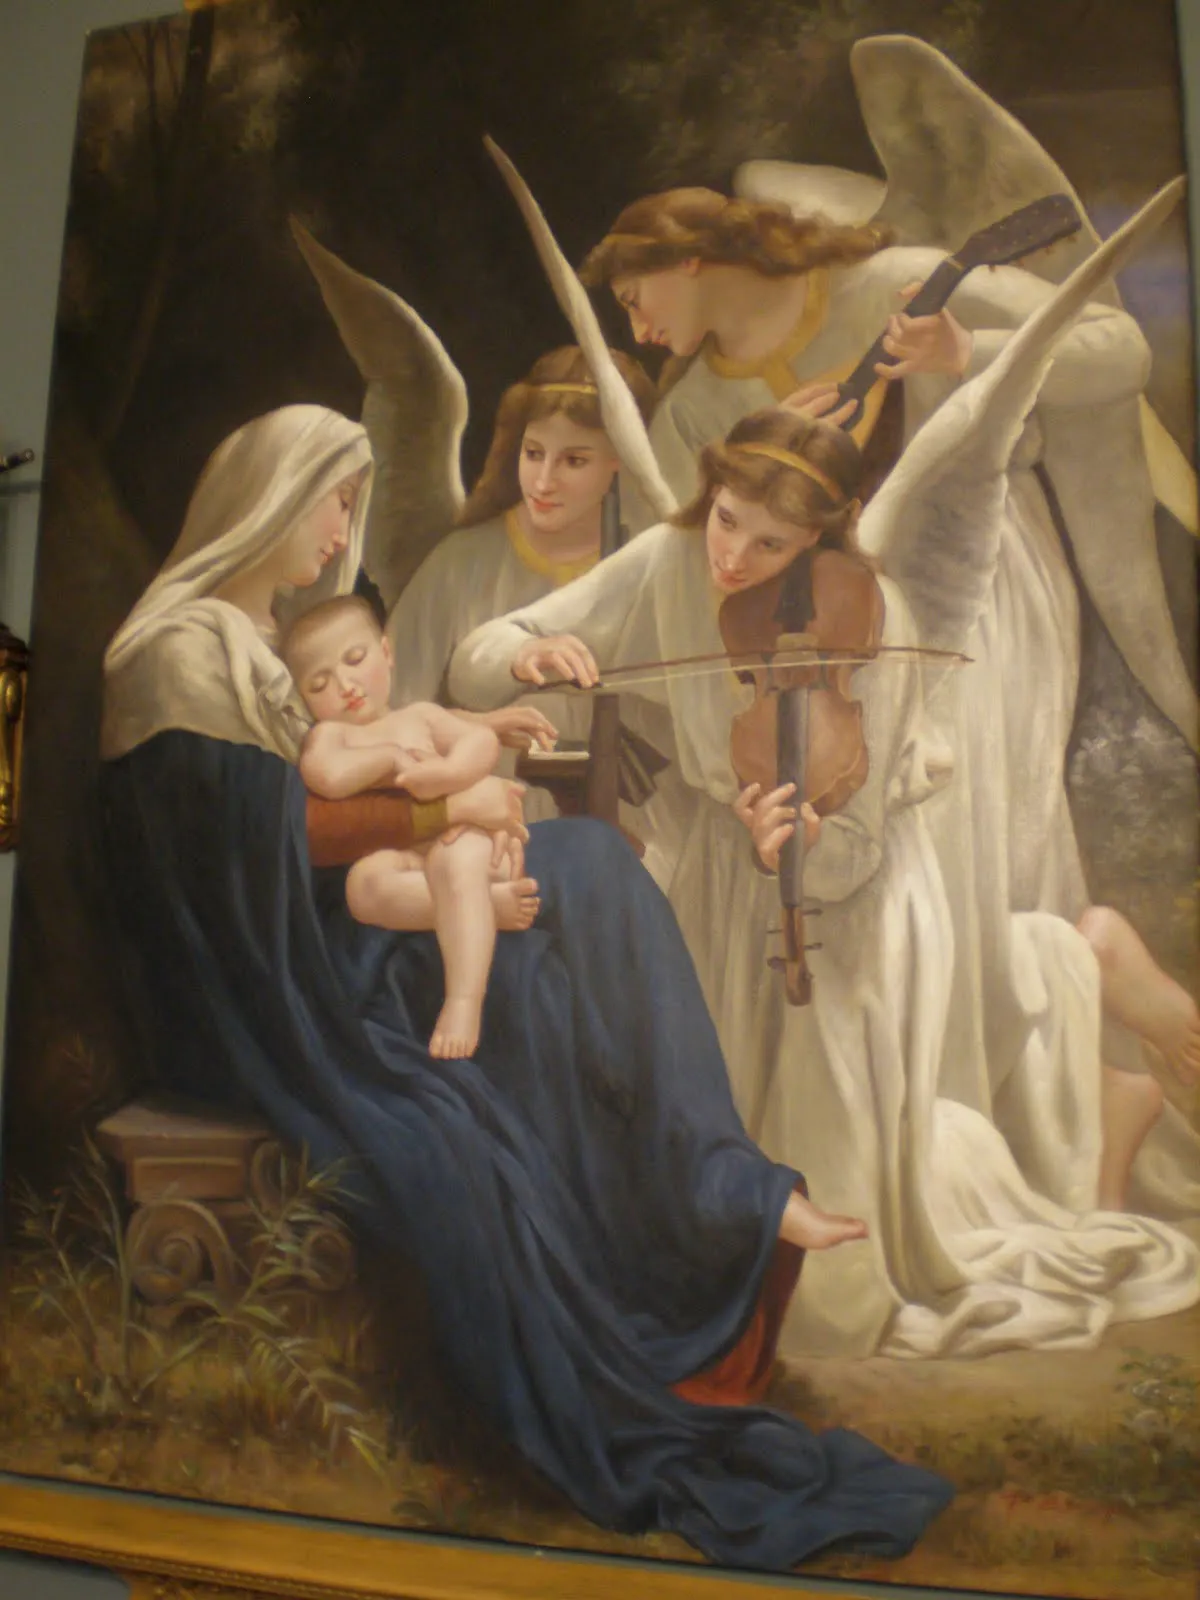 bellisima representacion de la virgen maria con el nino jesus en su ...